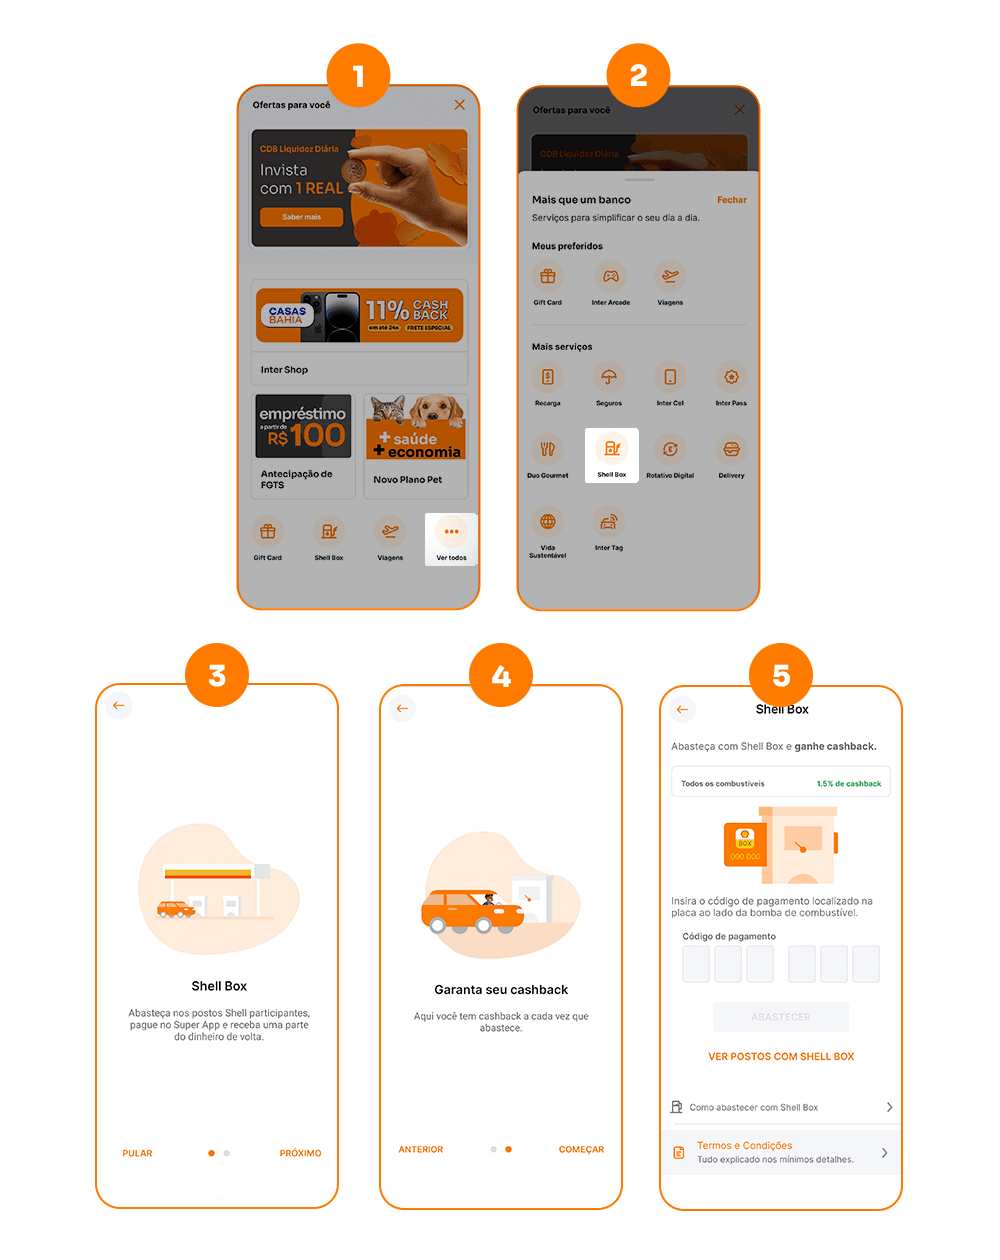 telas do app do Inter mostrando como pagar com Shell Box